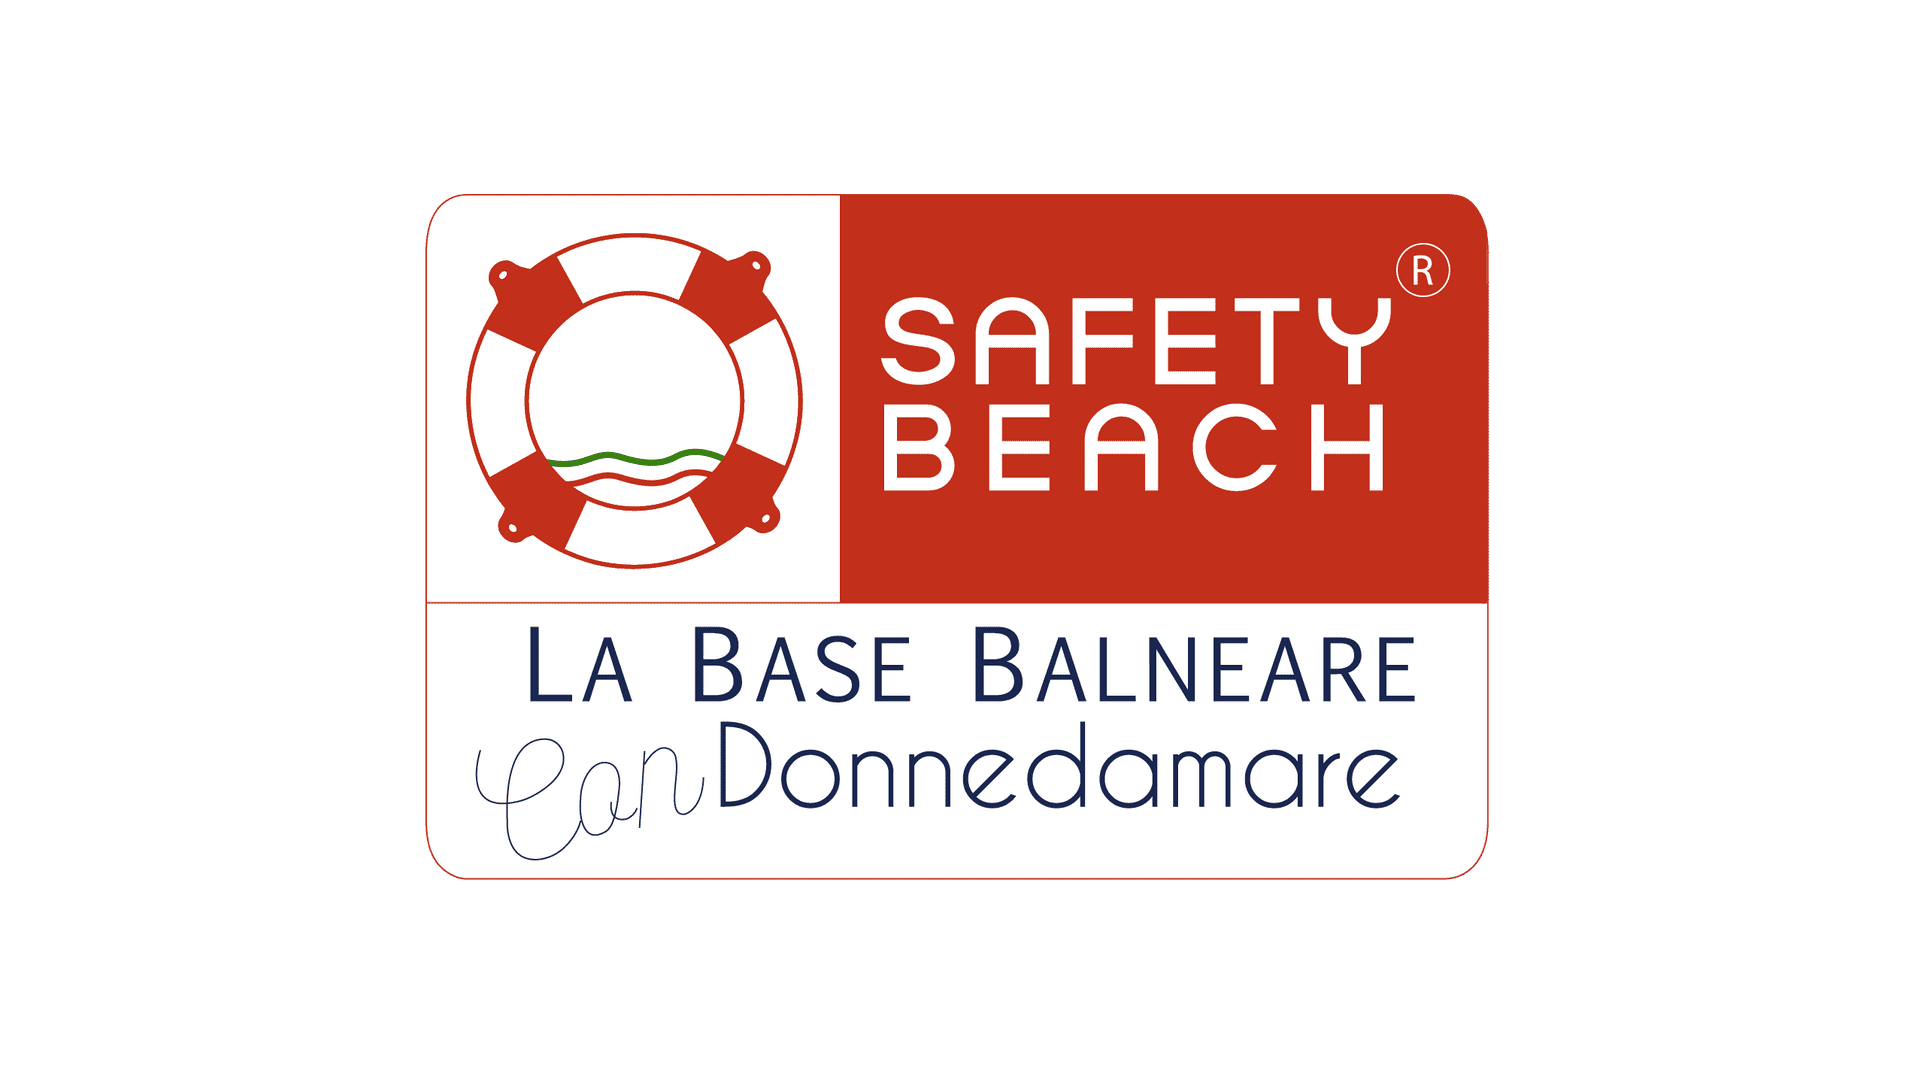 Safety Beach